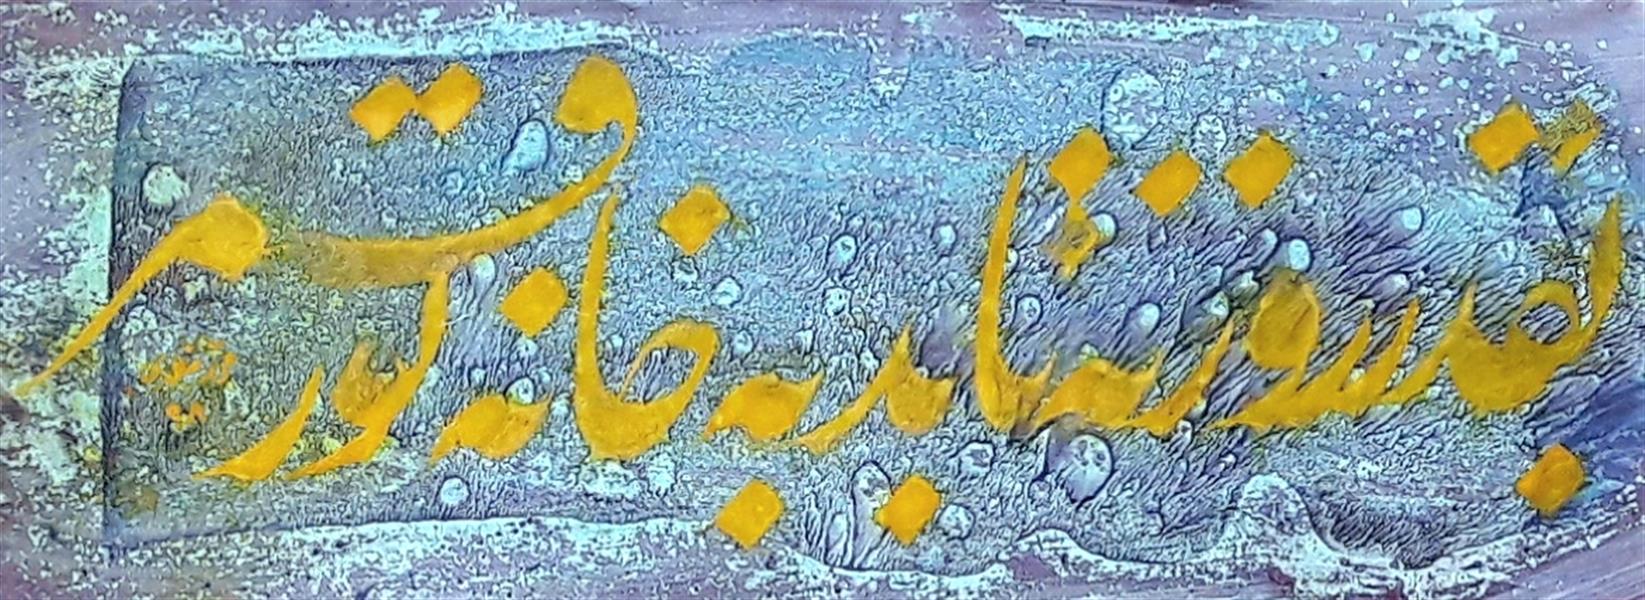 هنر خوشنویسی محفل خوشنویسی محمد مظهری به قدر روزنه تابد به خانه نور قمر